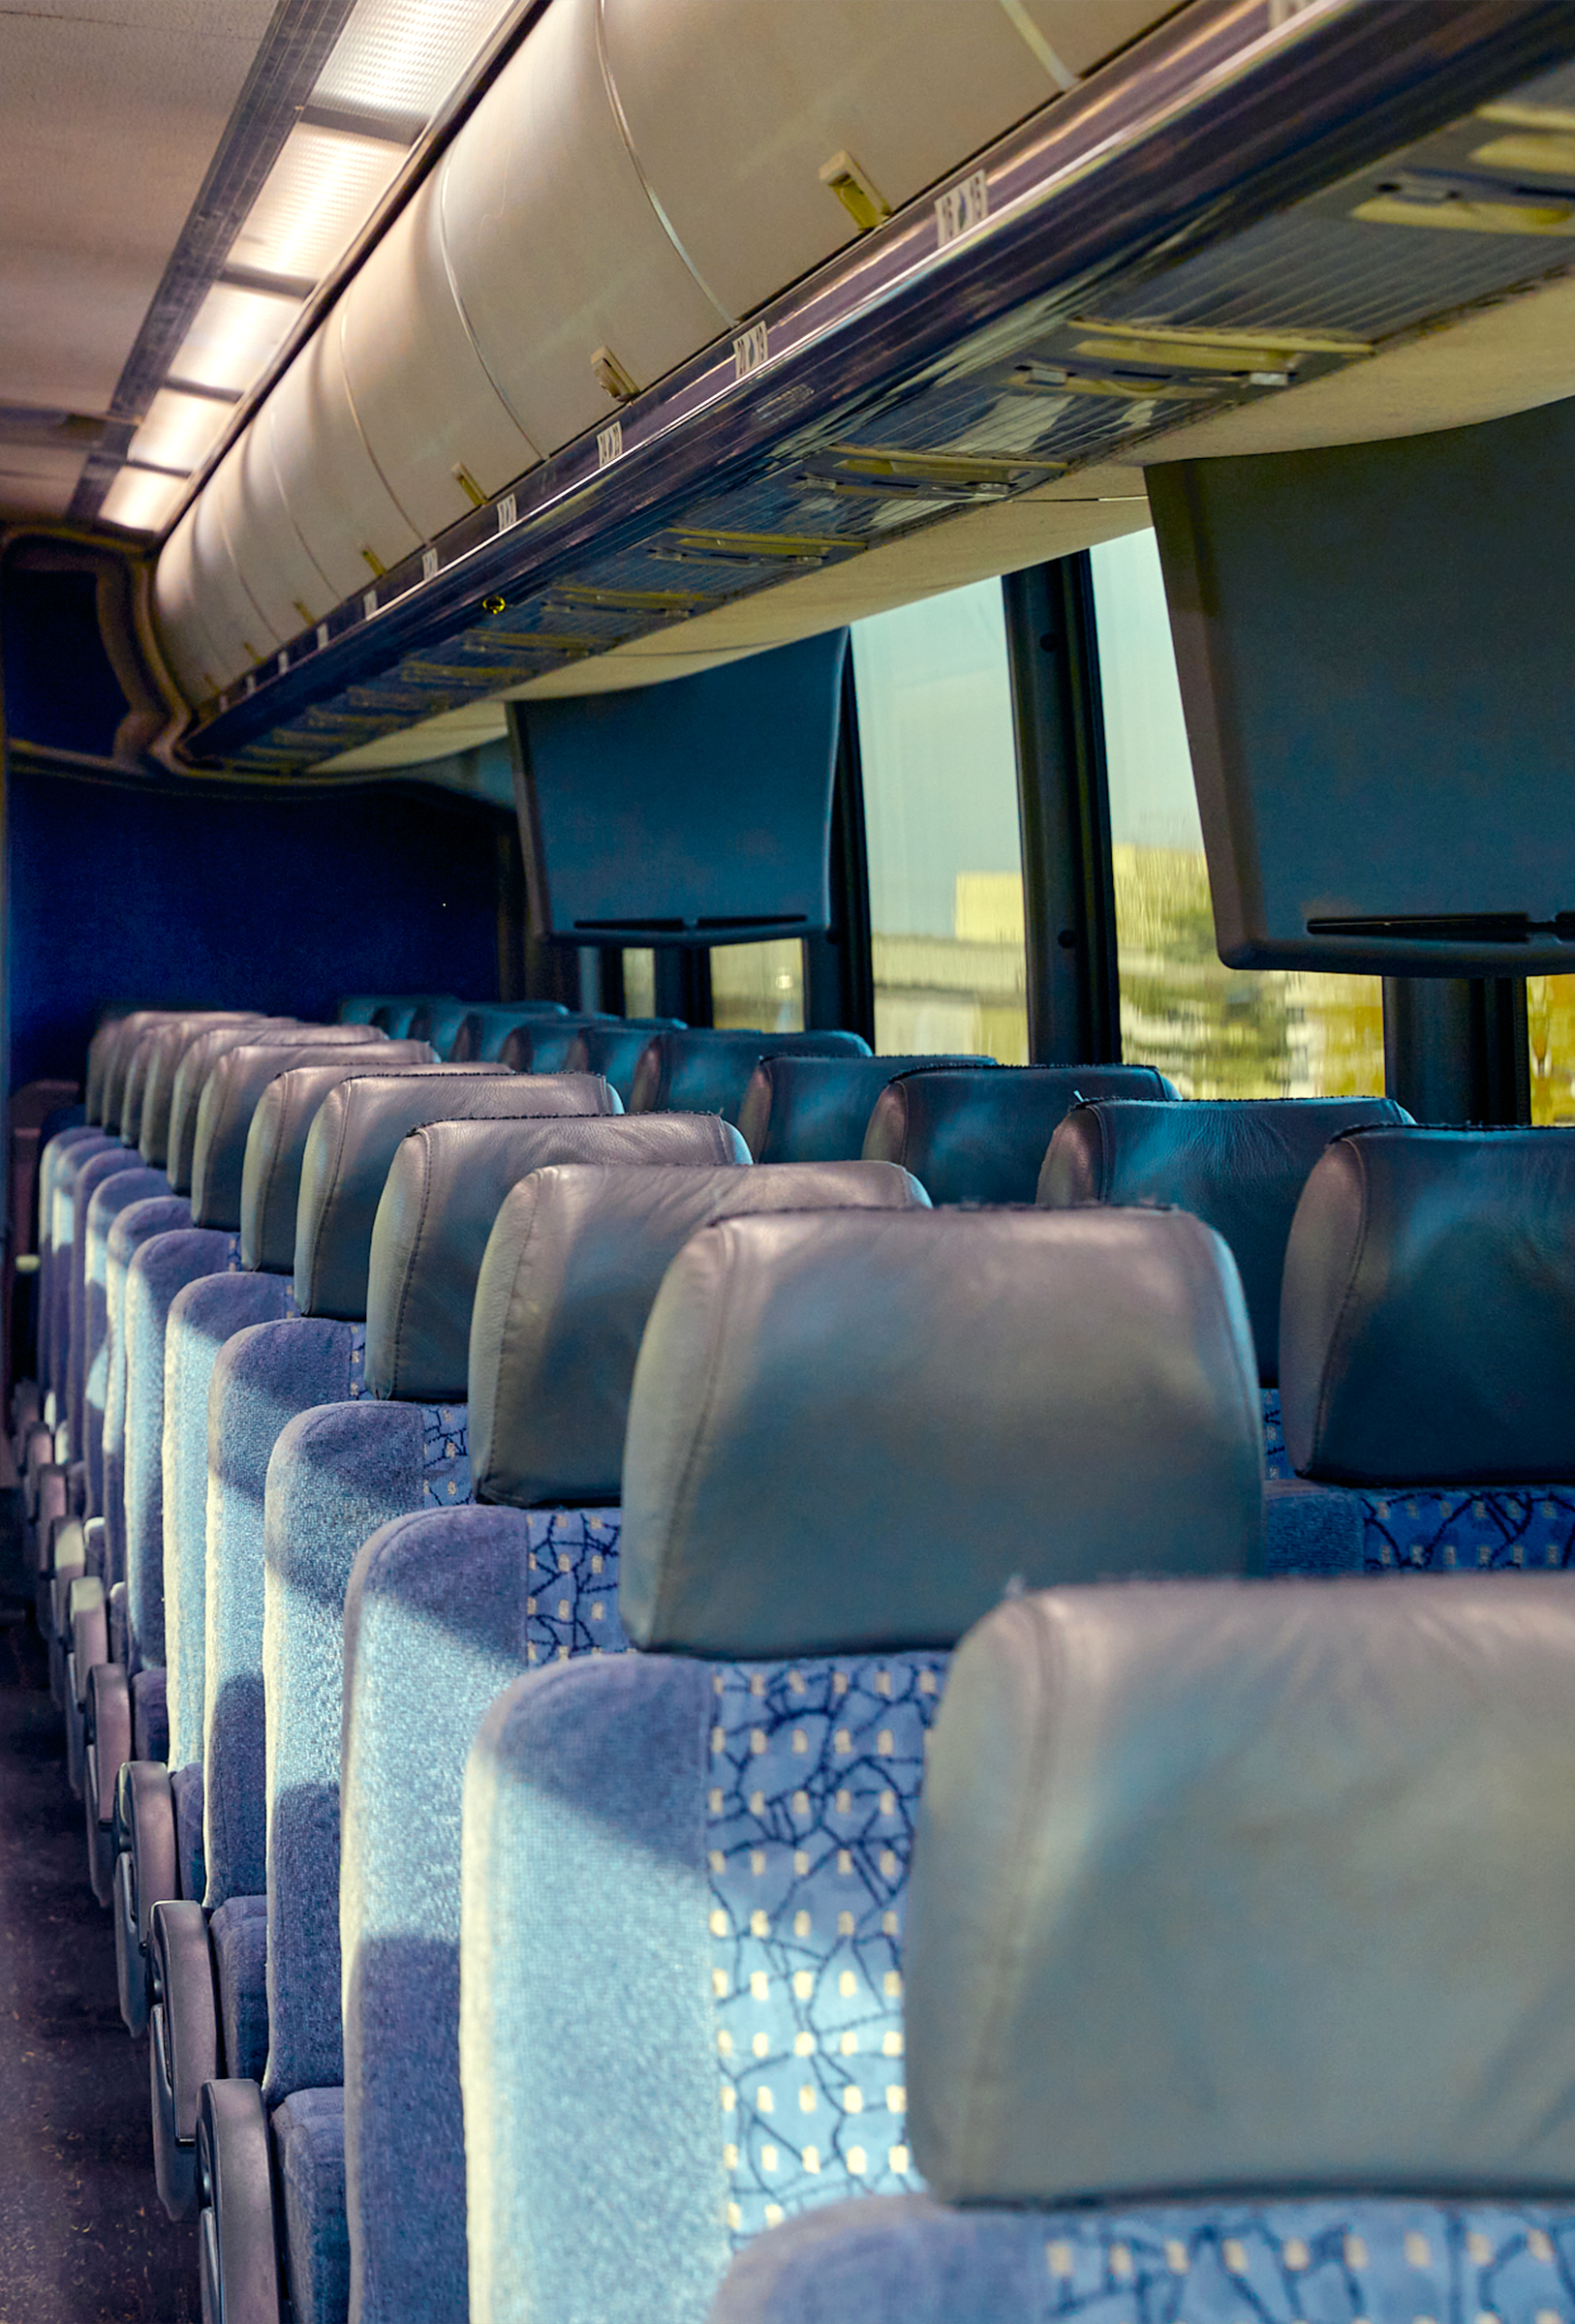 Passenger motorcoach charter bus seating headrest